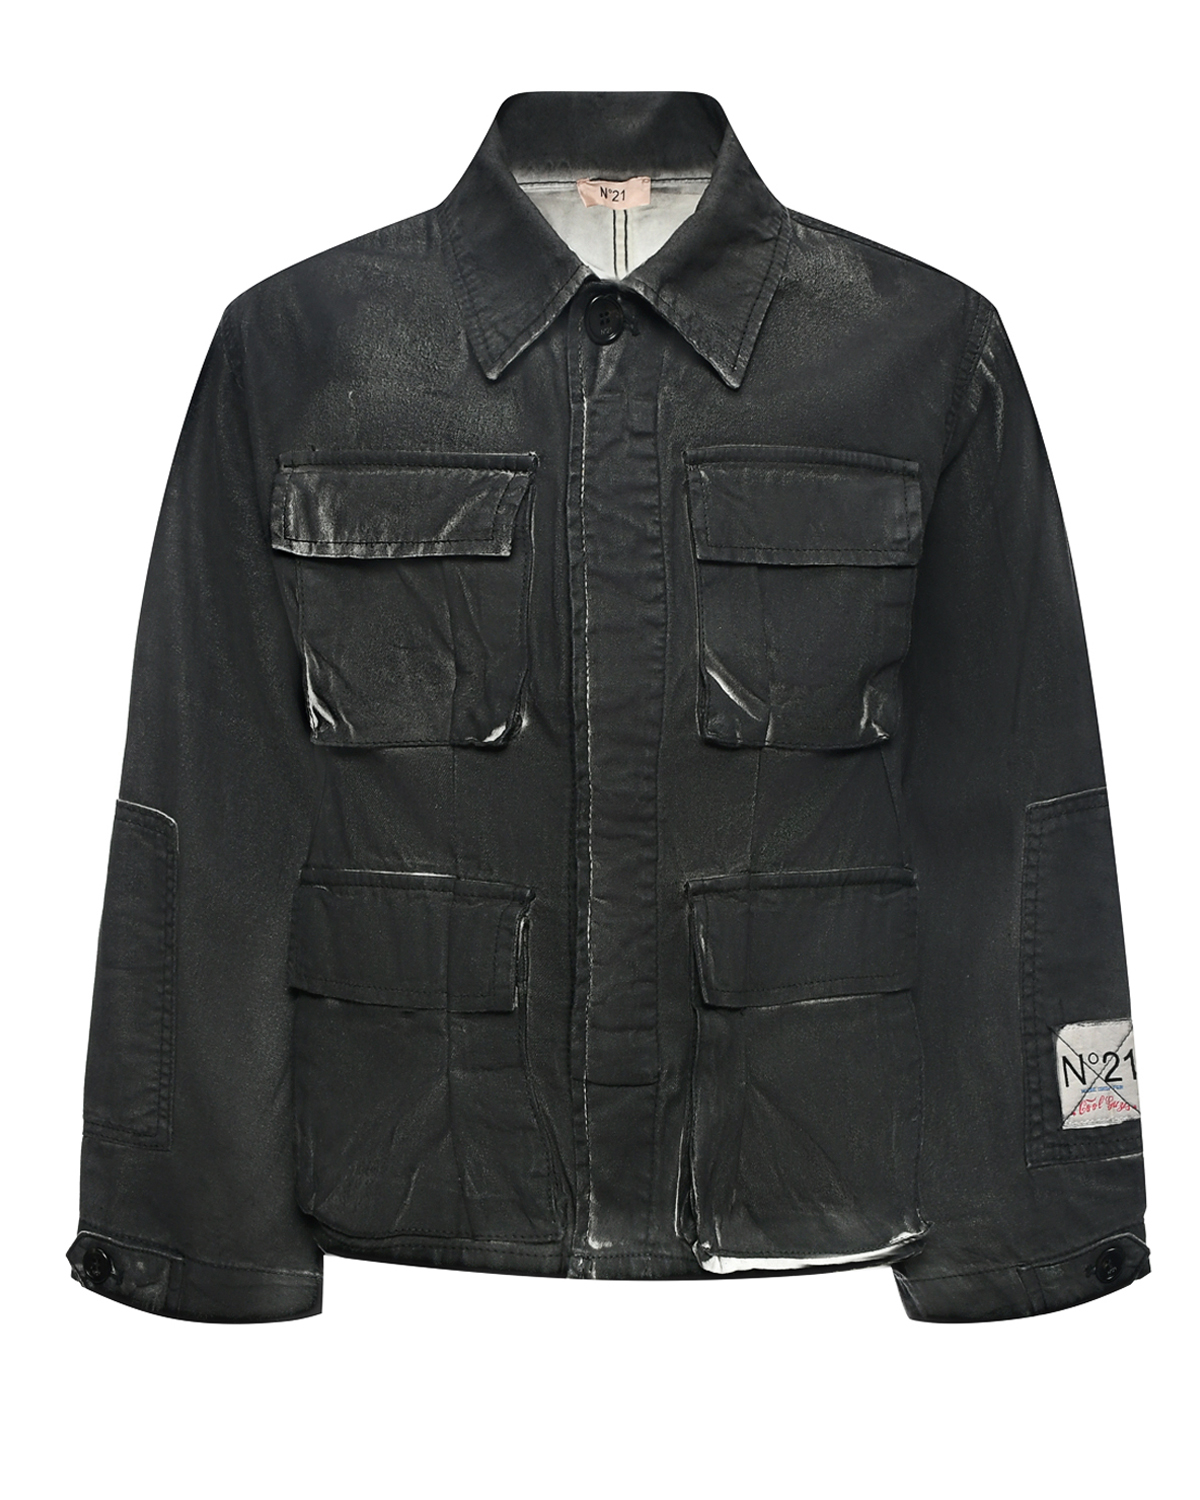 Джинсовая куртка с накладными карманами, черная No. 21, размер 164, цвет черный - фото 1